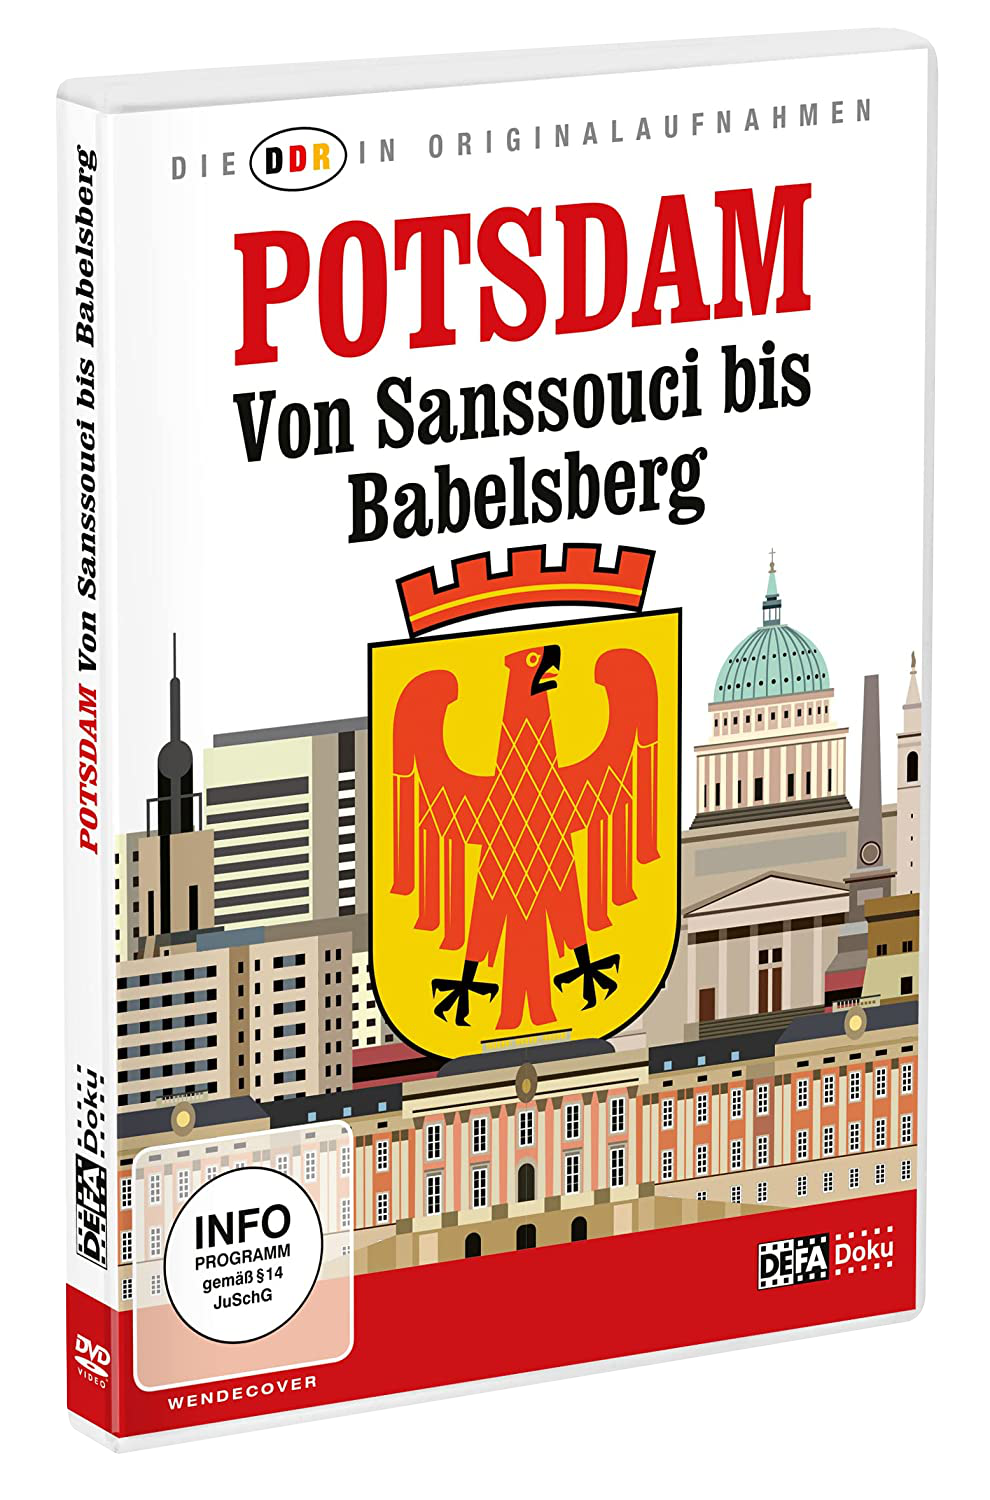 Die DDR in Originalaufnahmen - Potsdam - Von Sanssouci bis Babelsberg